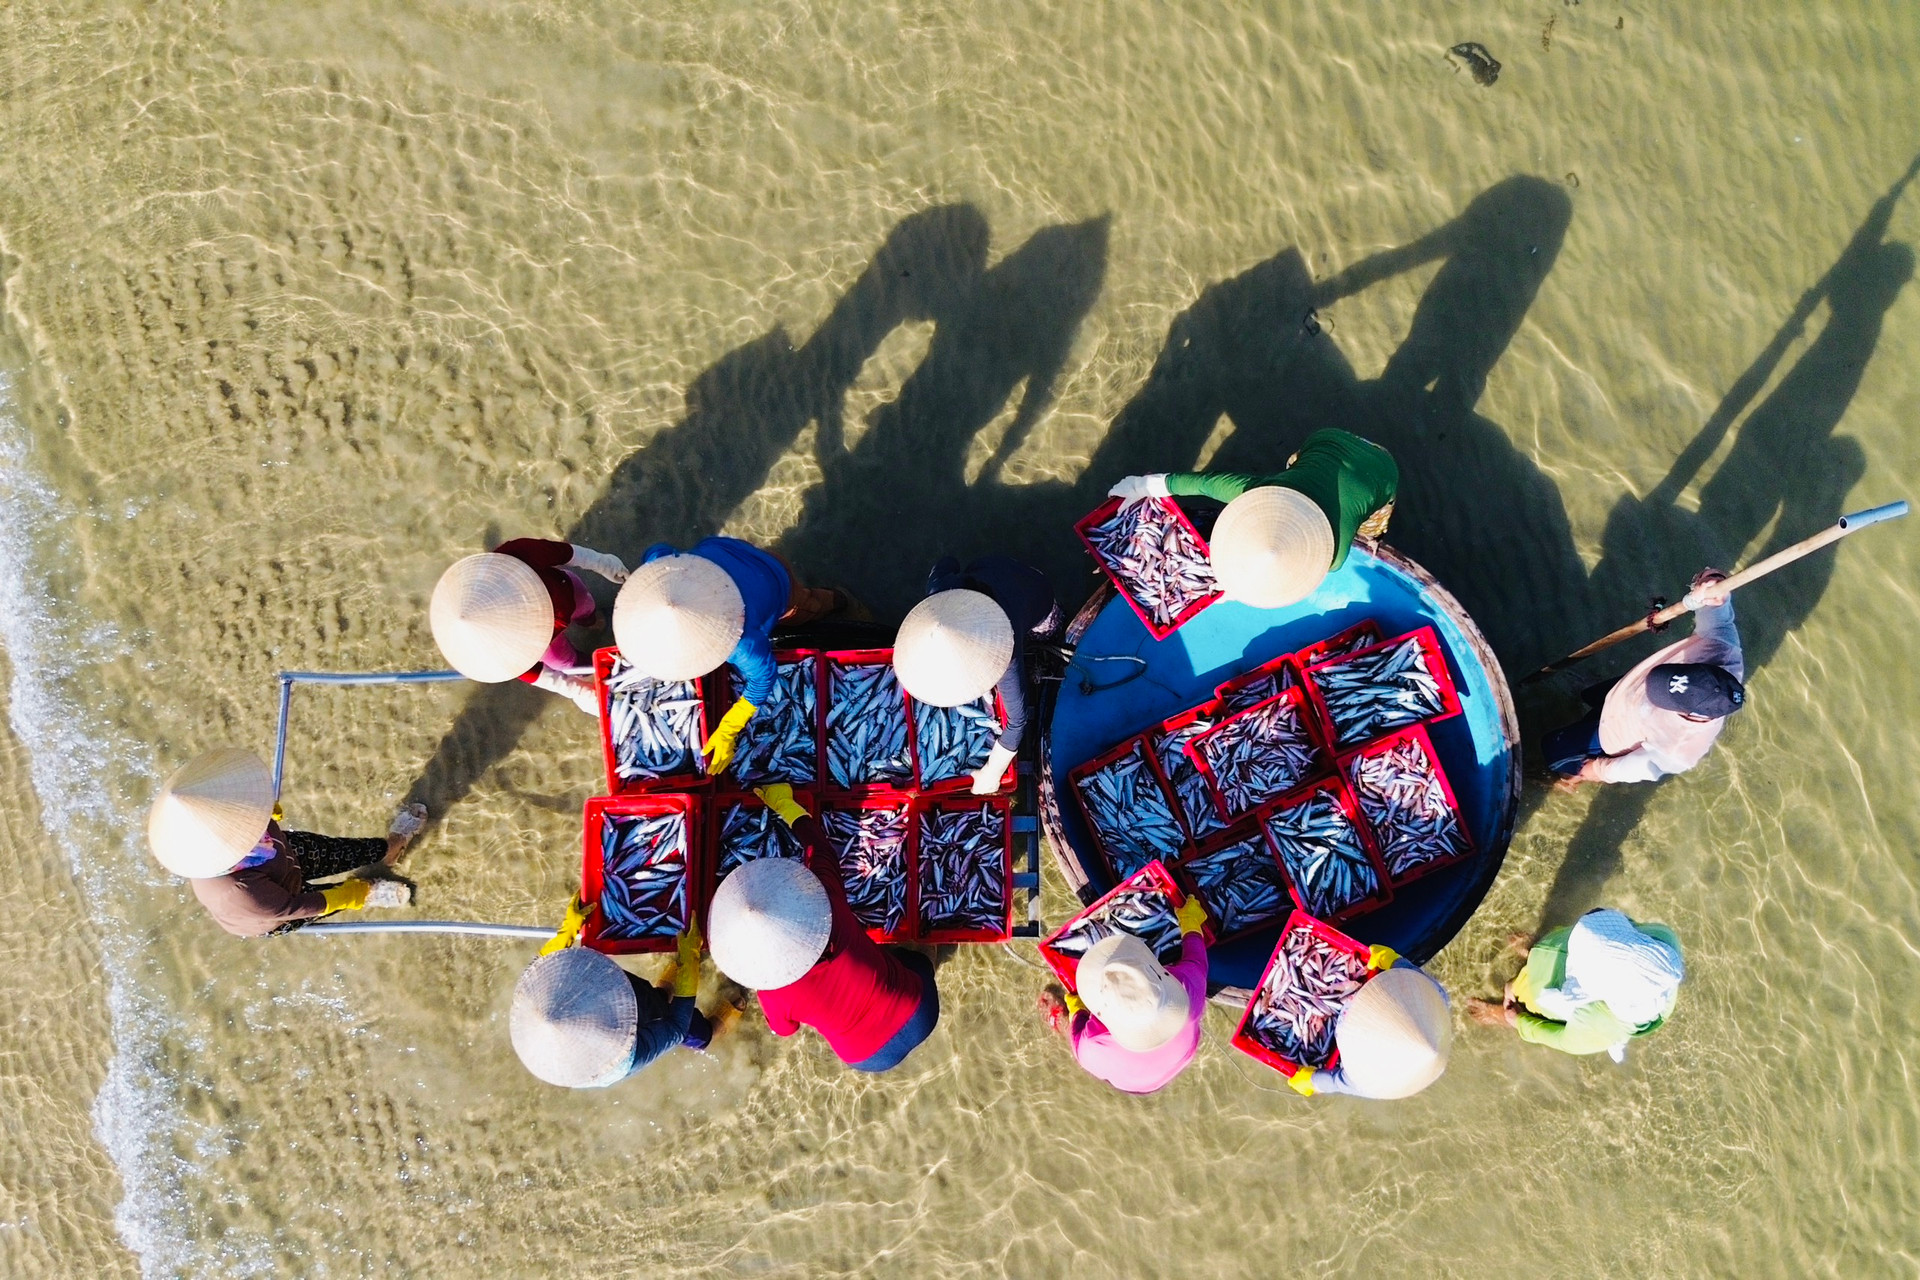 Ở Quảng Ngãi có cái chợ làng biển, hễ mặt trời ló rạng là tấp nập mua bán, cá cơm chất tươi đầy thuyền thúng- Ảnh 6.